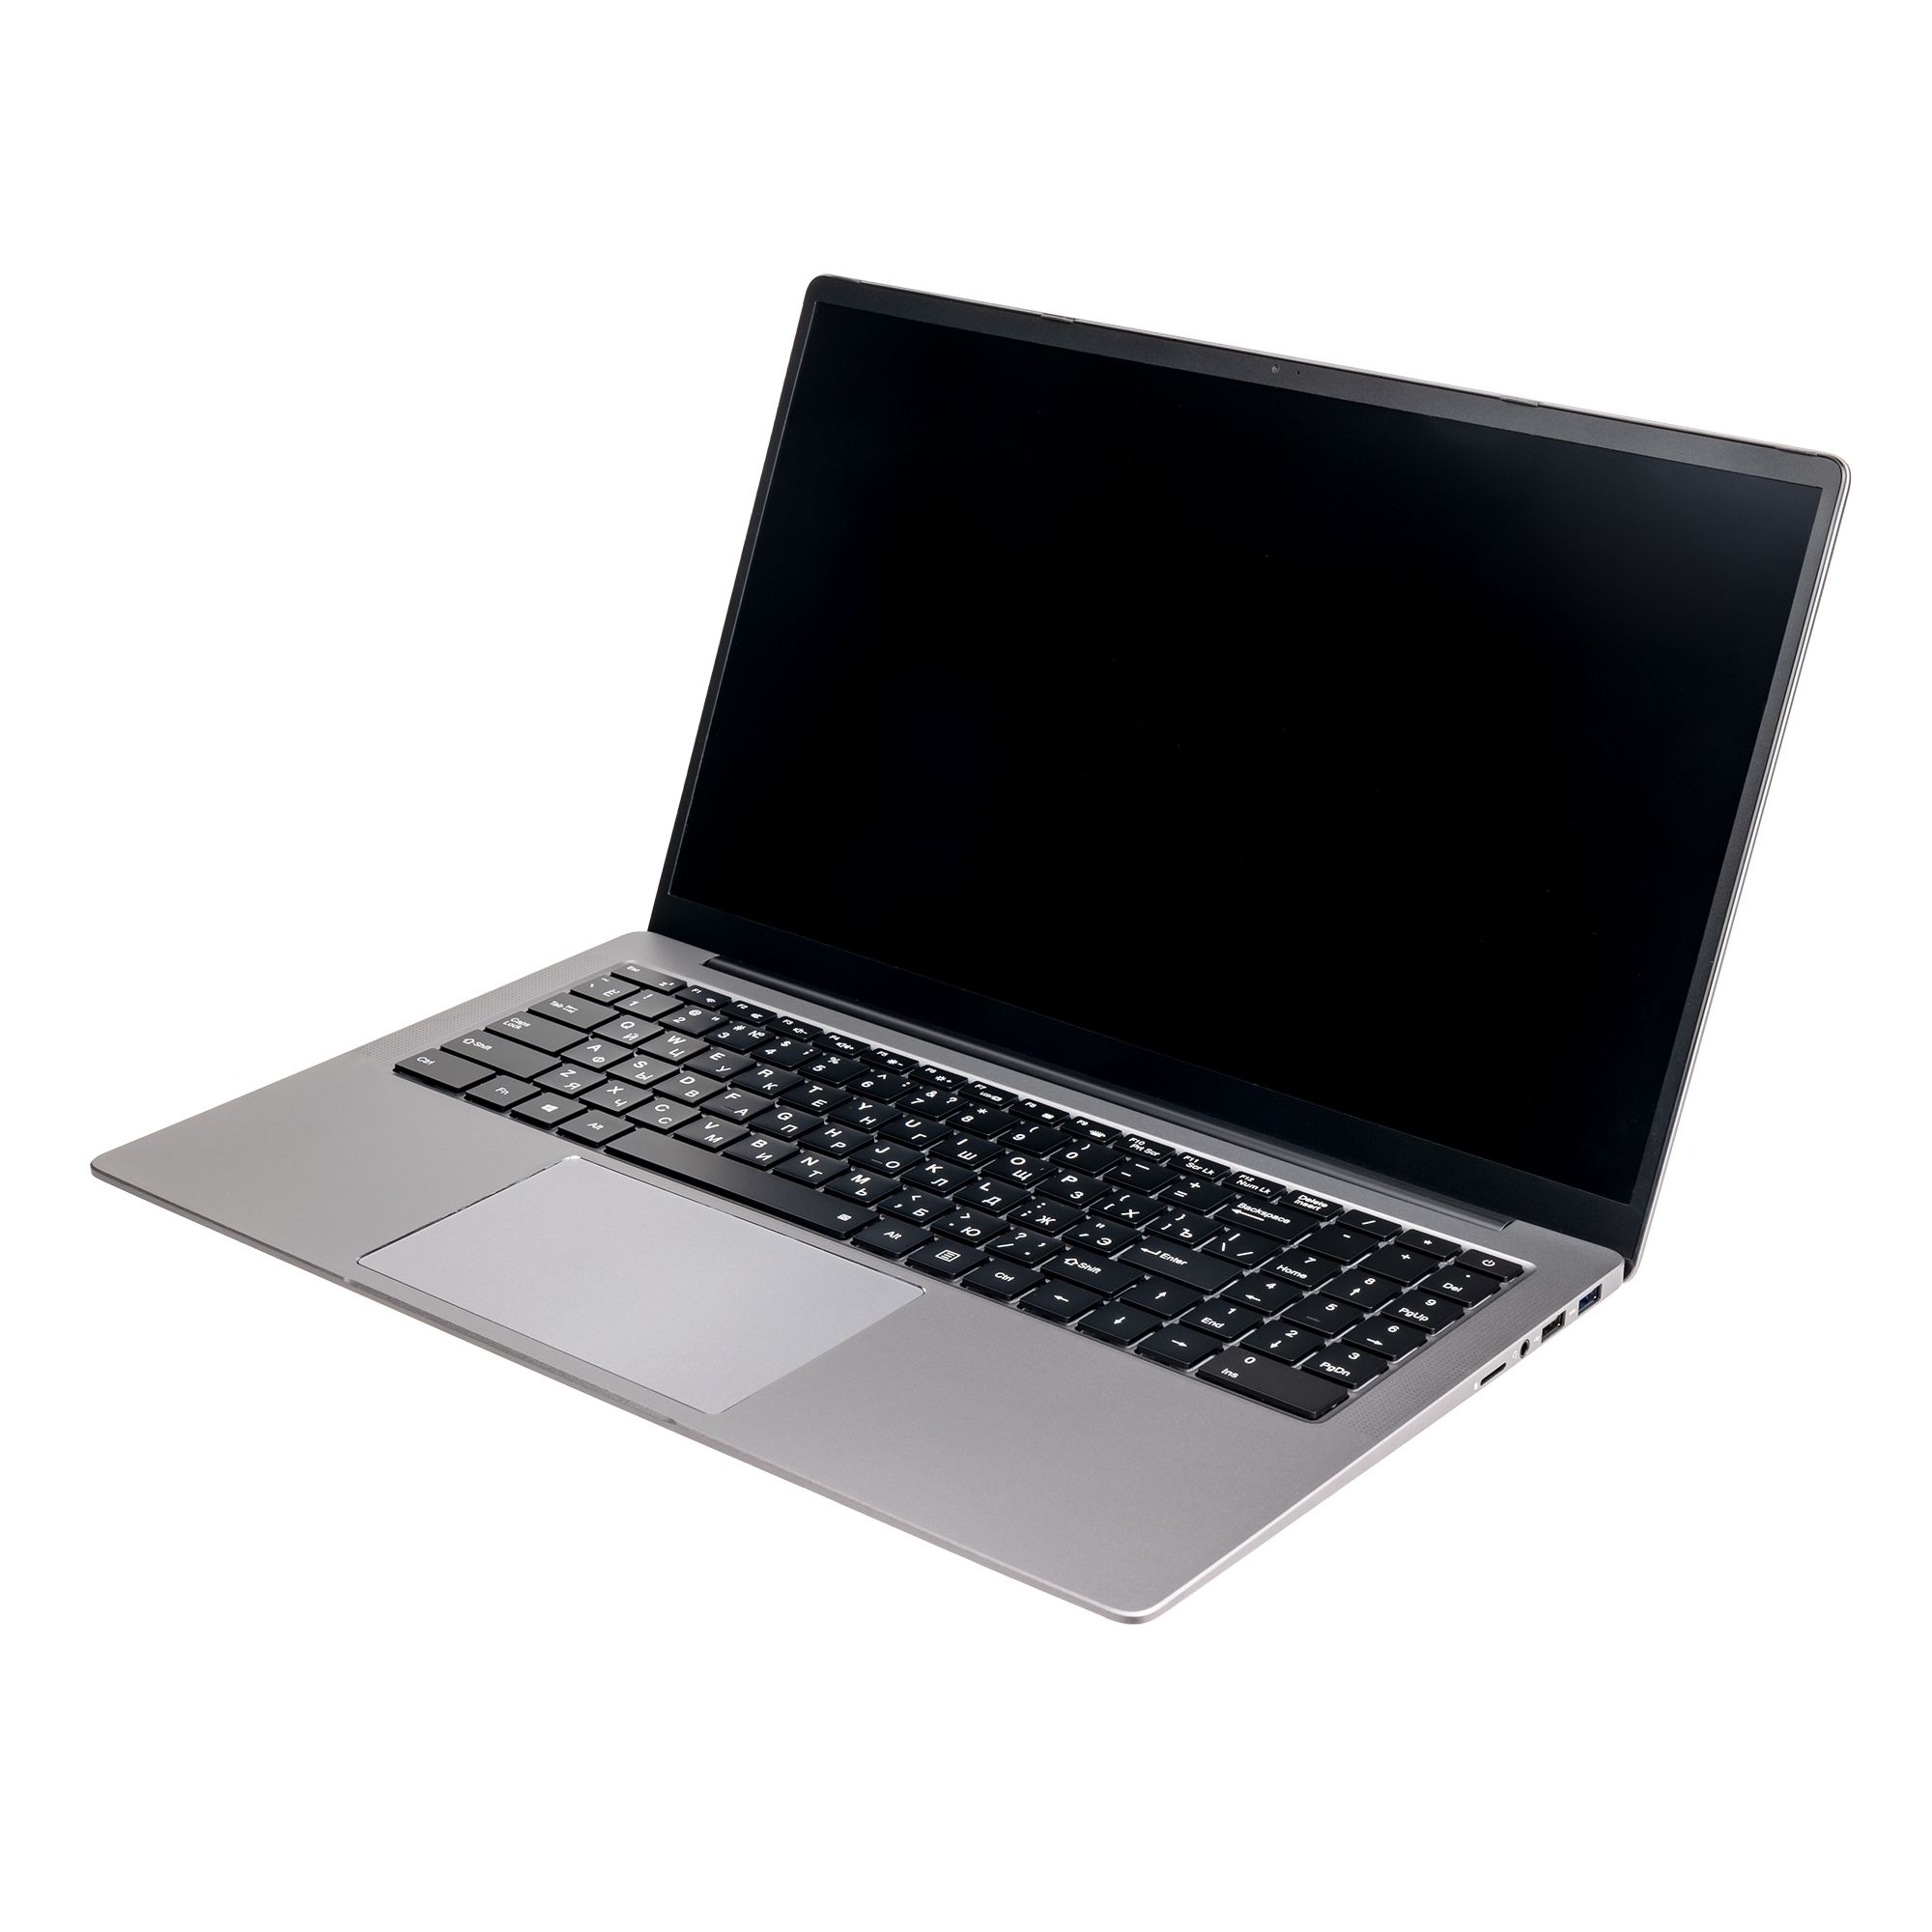 Ноутбук Hiper Expertbook MTL1601 (MTL1601D1235UDS) ноутбук hiper expertbook mtl1601 mtl1601b1235uds